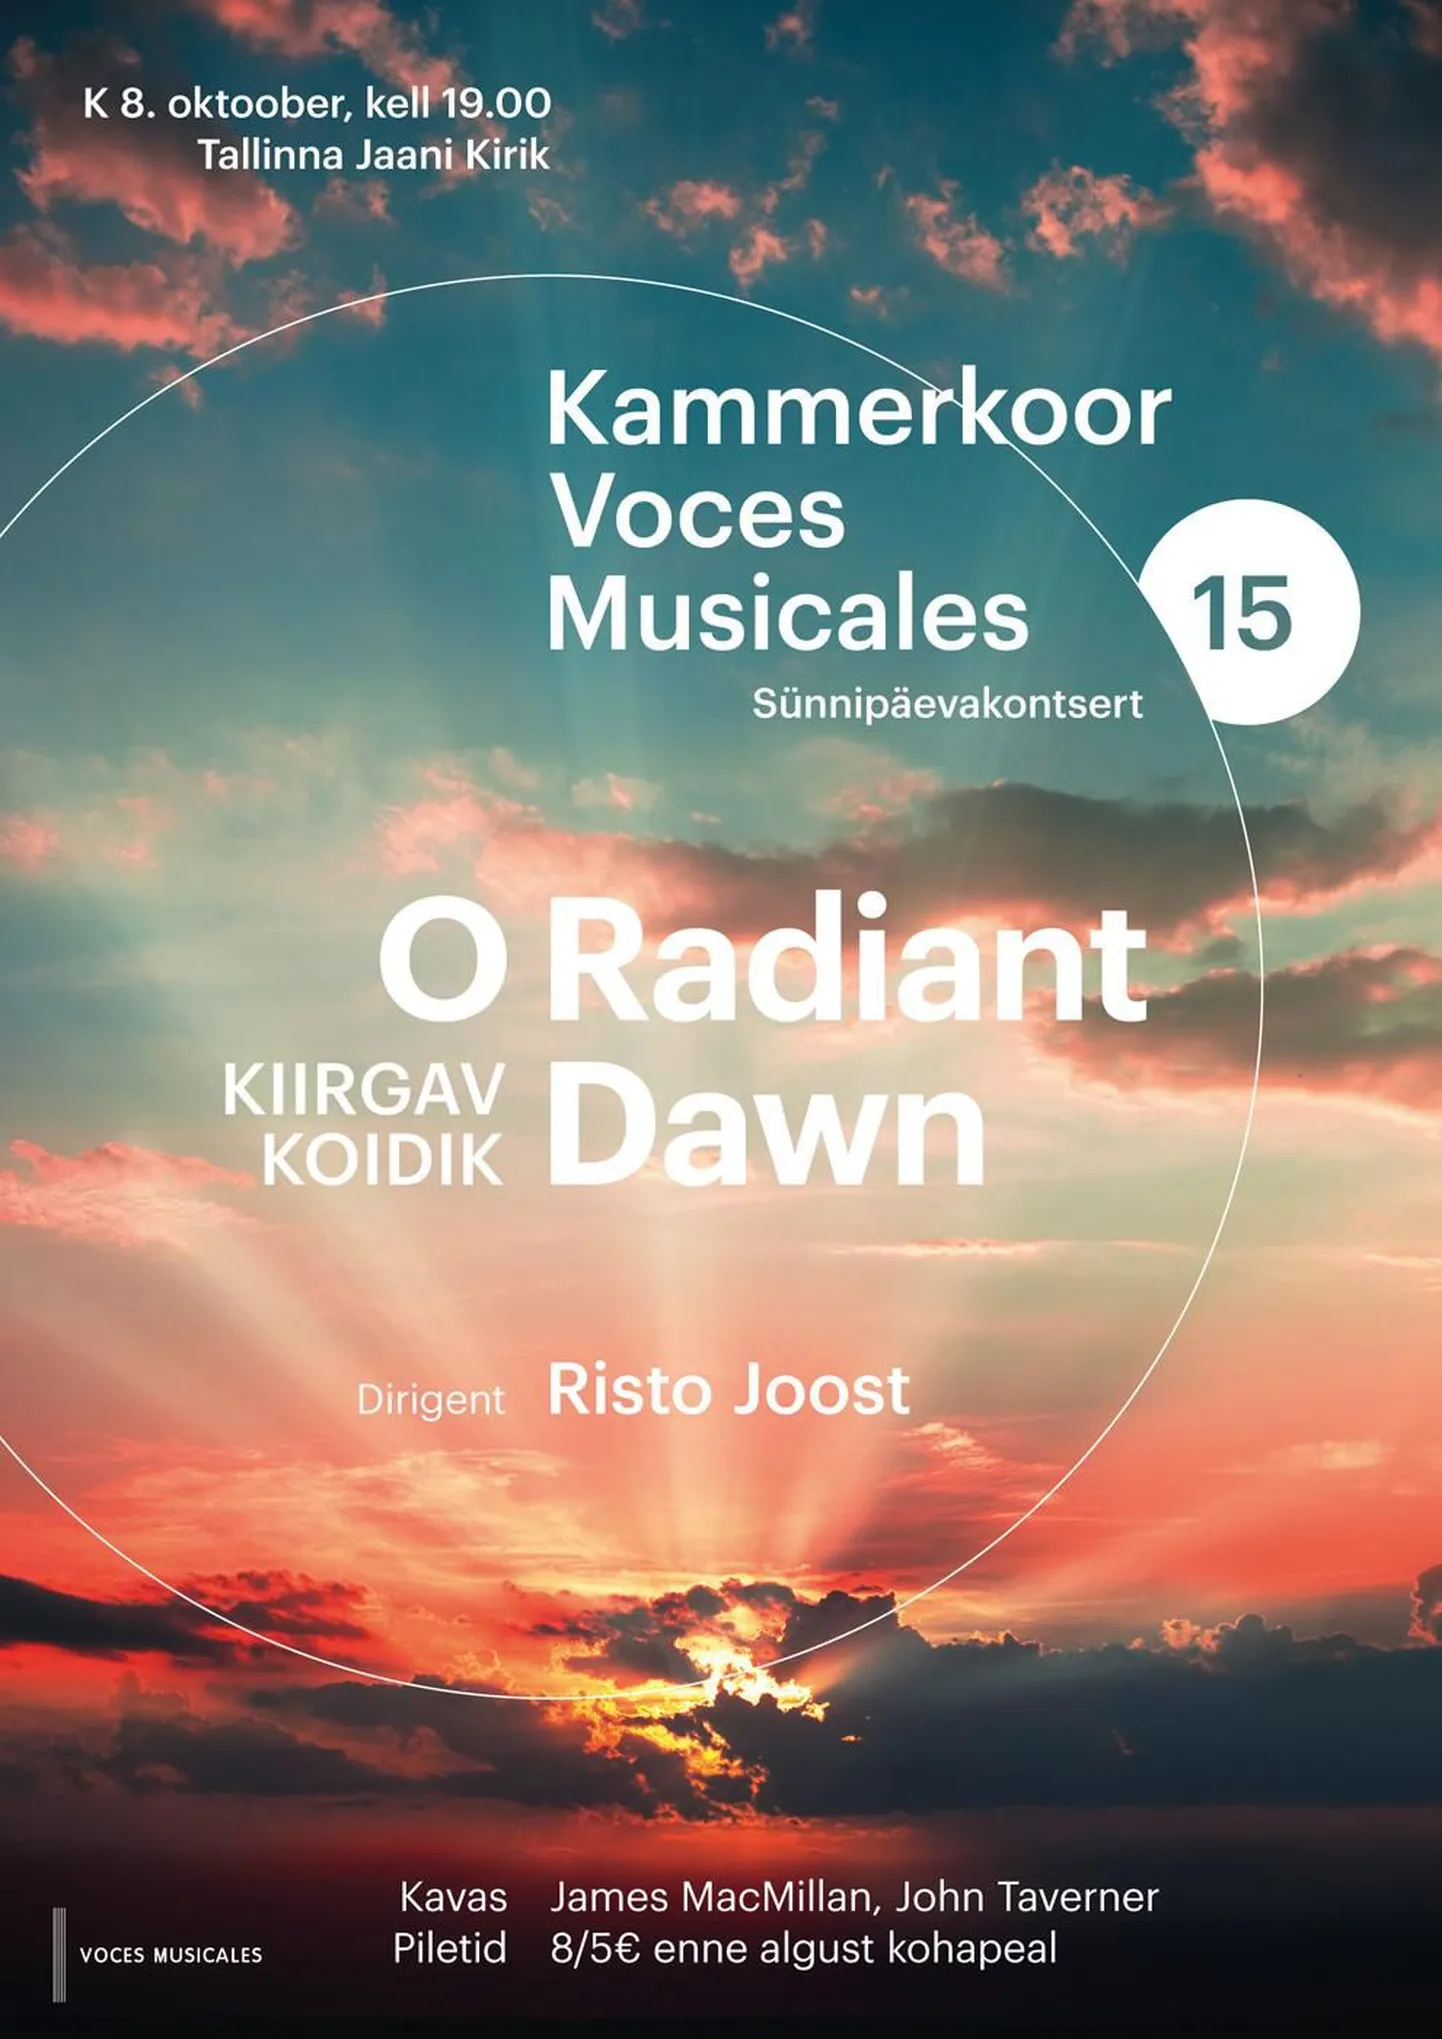 Kammerkoori Voces Musicales sünnipäevakontsert "O Radiant Dawn"